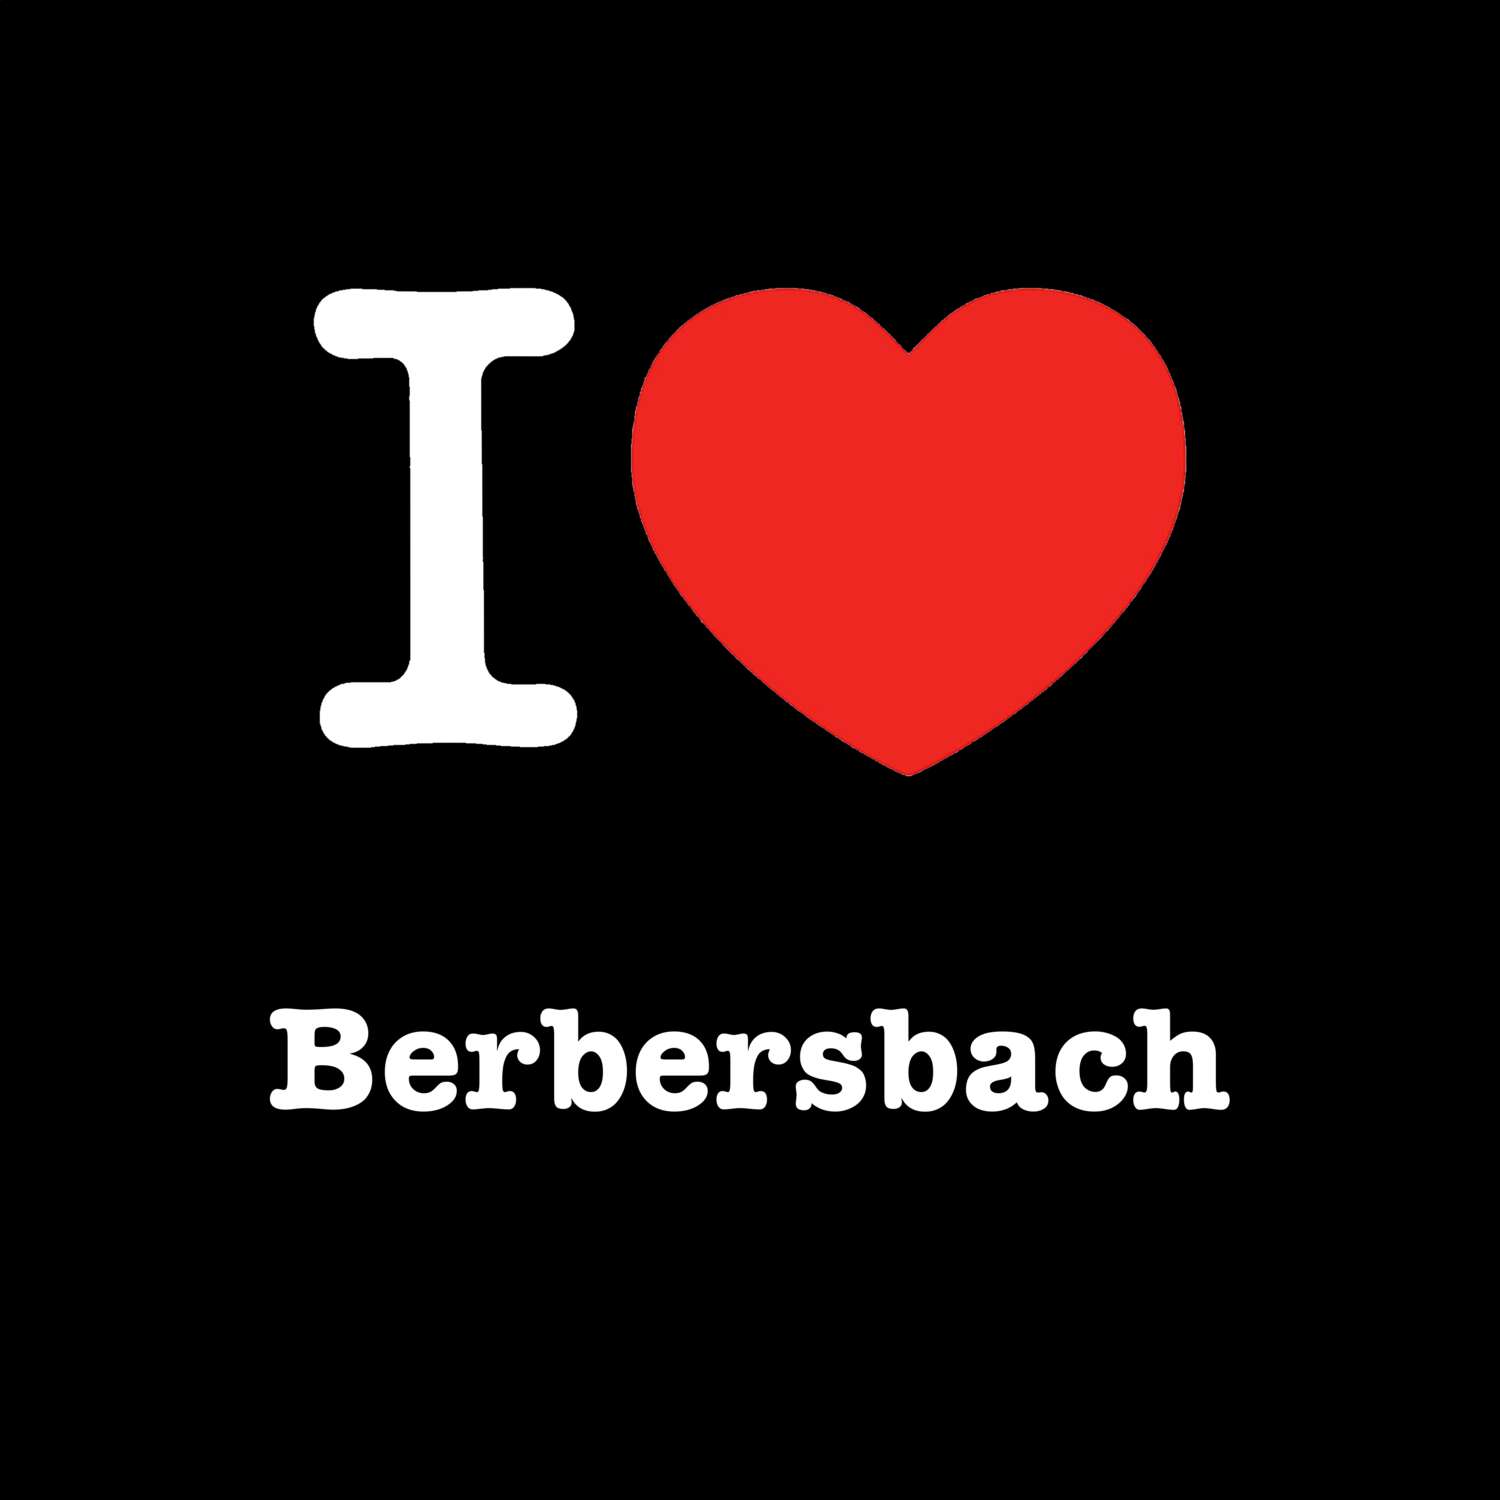 Berbersbach T-Shirt »I love«